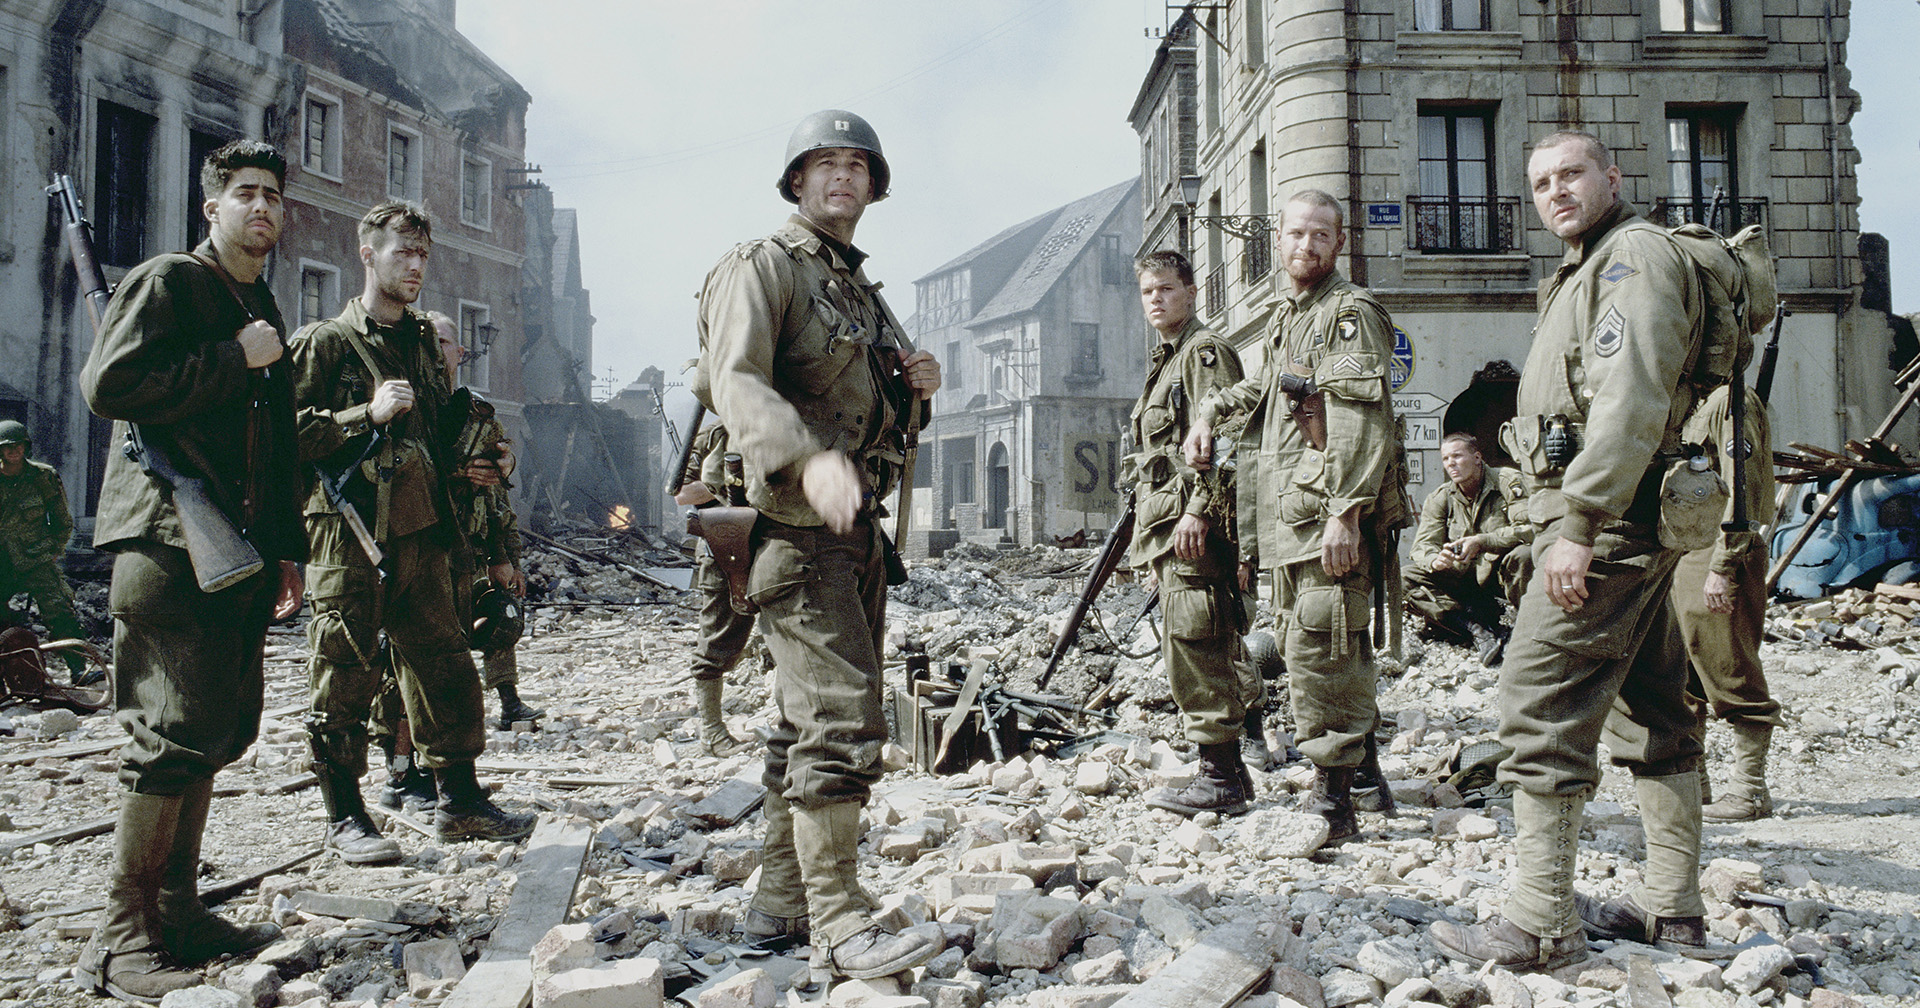 15 เกร็ด ‘Saving Private Ryan’ หนังสงครามน้ำดีที่ชวด Oscars สาขาภาพยนตร์ยอดเยี่ยม